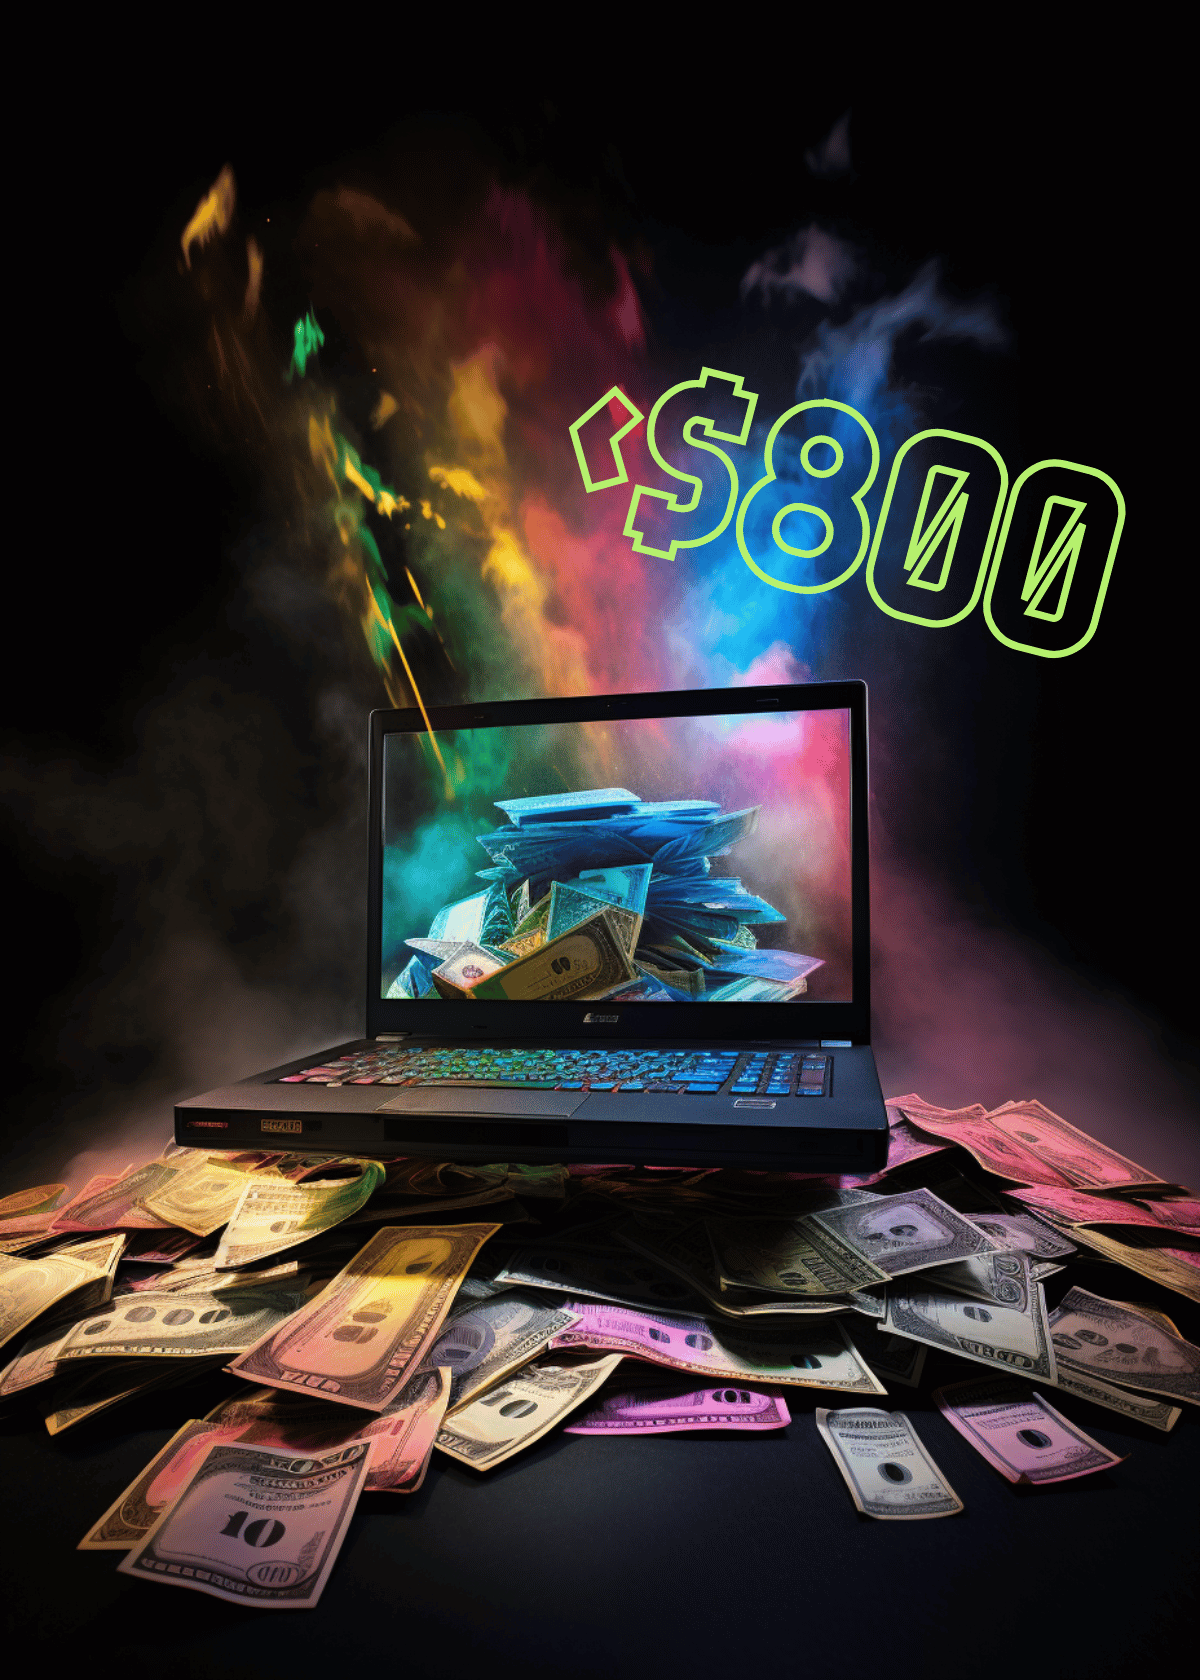 Best Gaming Laptop Under $800